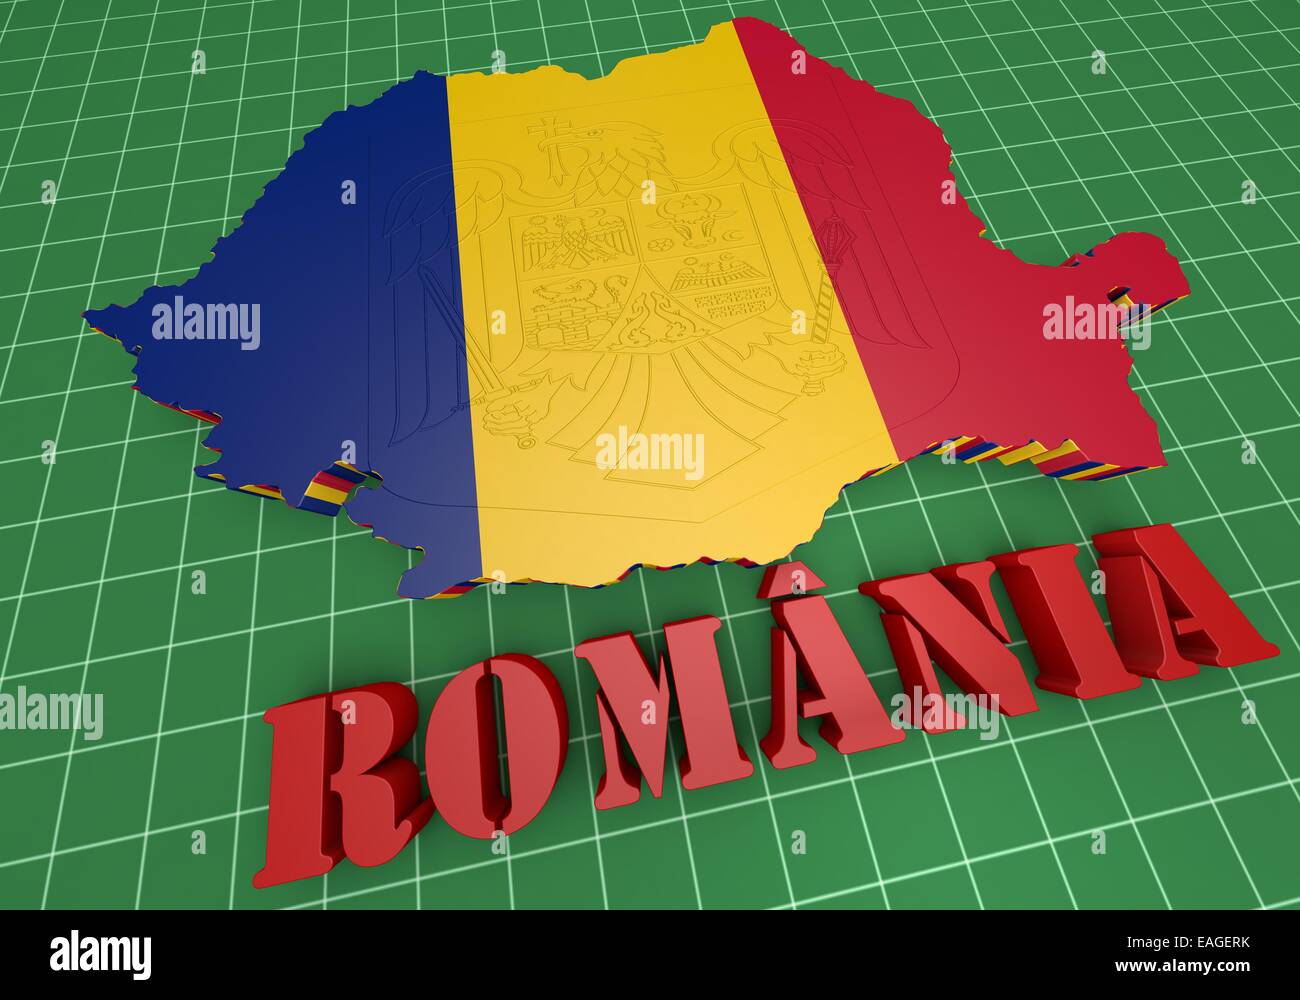 3D-Illustration Karte von Rumänien mit Flagge und Wappen Stockfoto